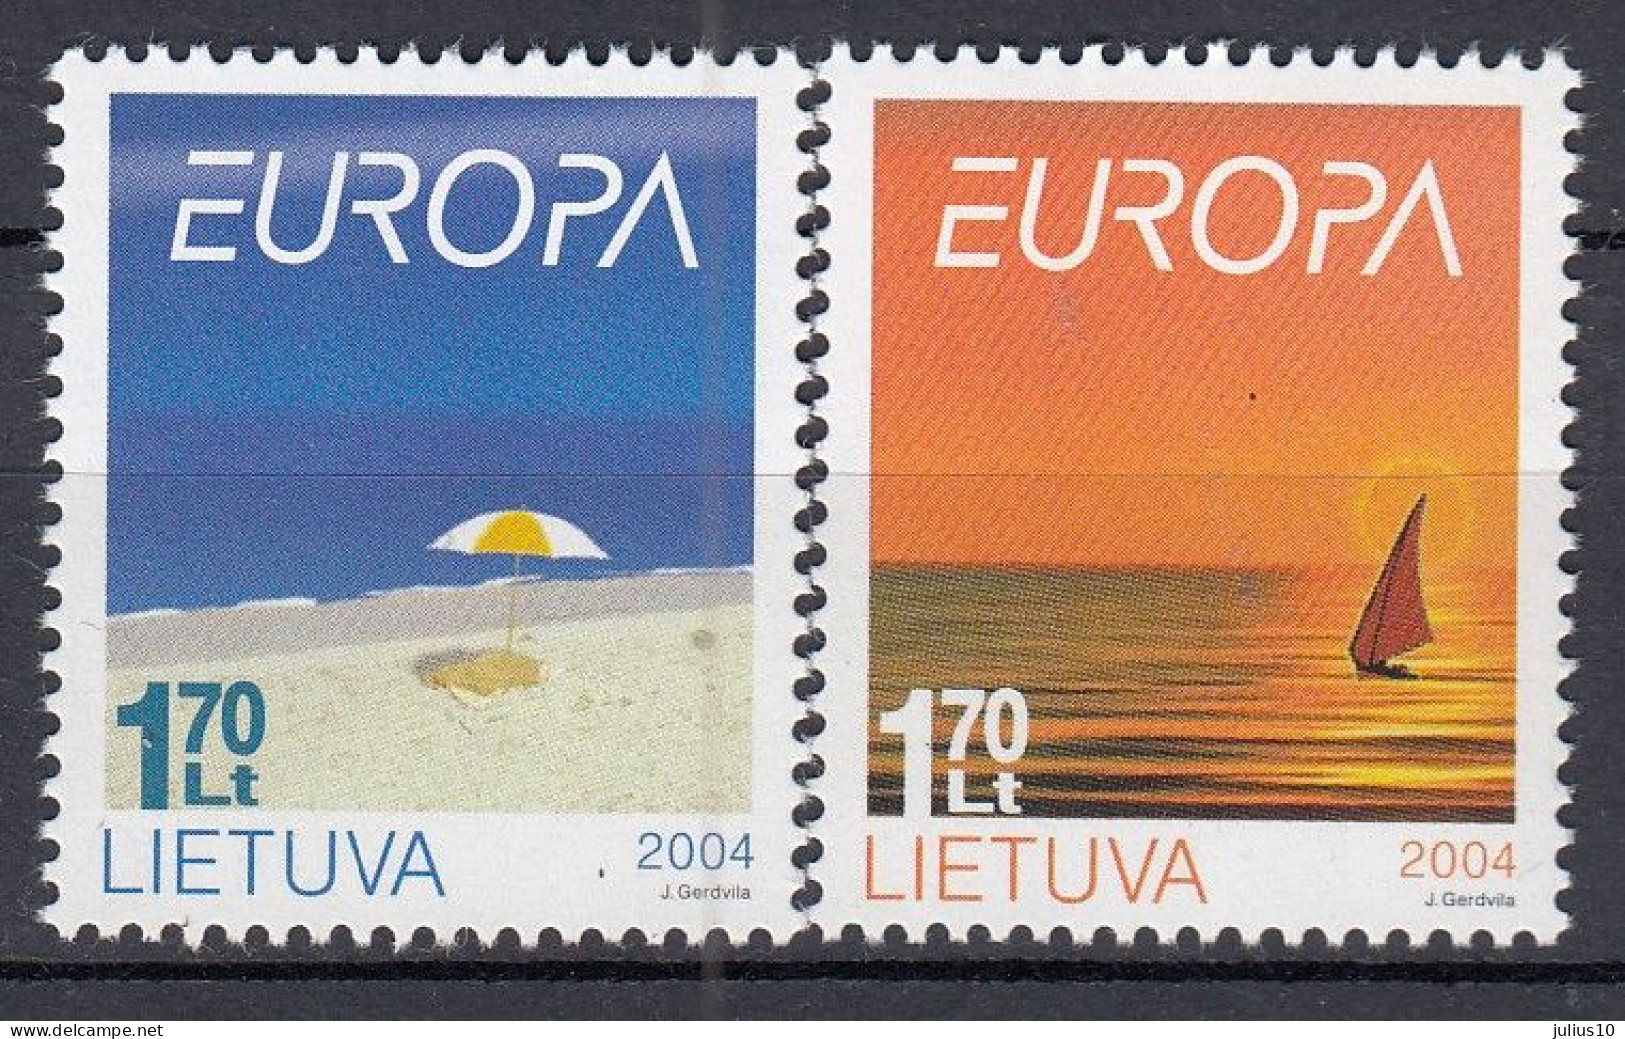 LITHUANIA 2004 Europa Holiday MNH(**) Mi 842-843 #Lt1004 - Lithuania